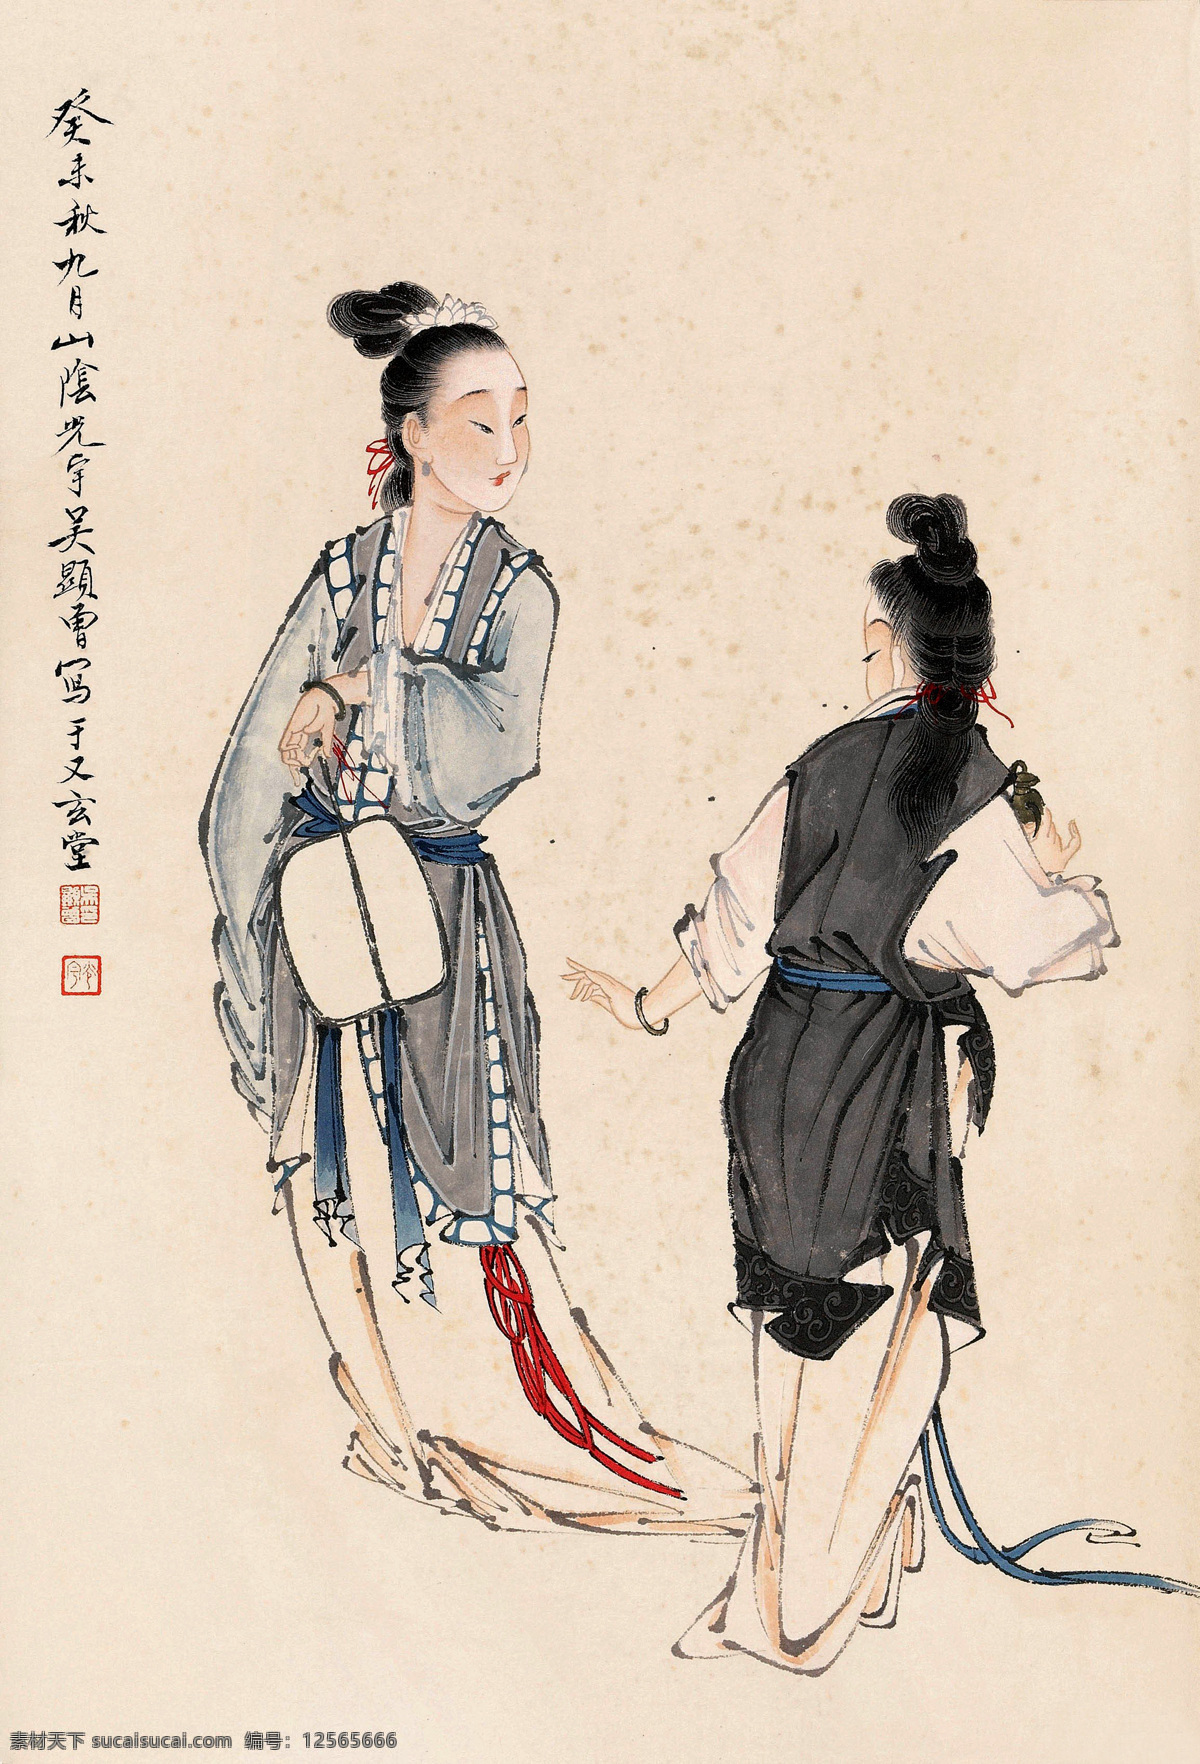 古代仕女画 美术 中国画 人物画 女人 仕女 丽人 工笔画 国画集124 文化艺术 绘画书法